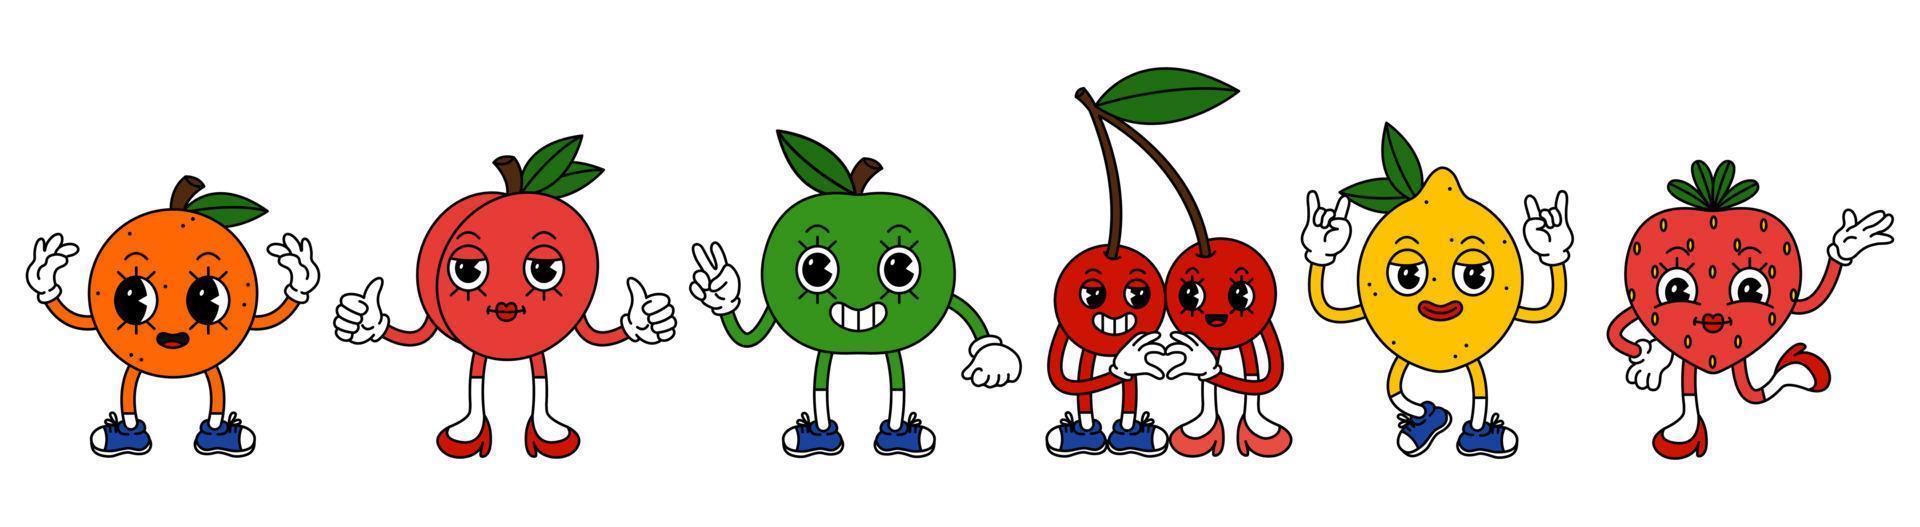 uppsättning av rolig frukt tecken i trendig retro tecknad serie stil. vektor illustration av körsbär, persika, jordgubbe, orange, äpple och citron.